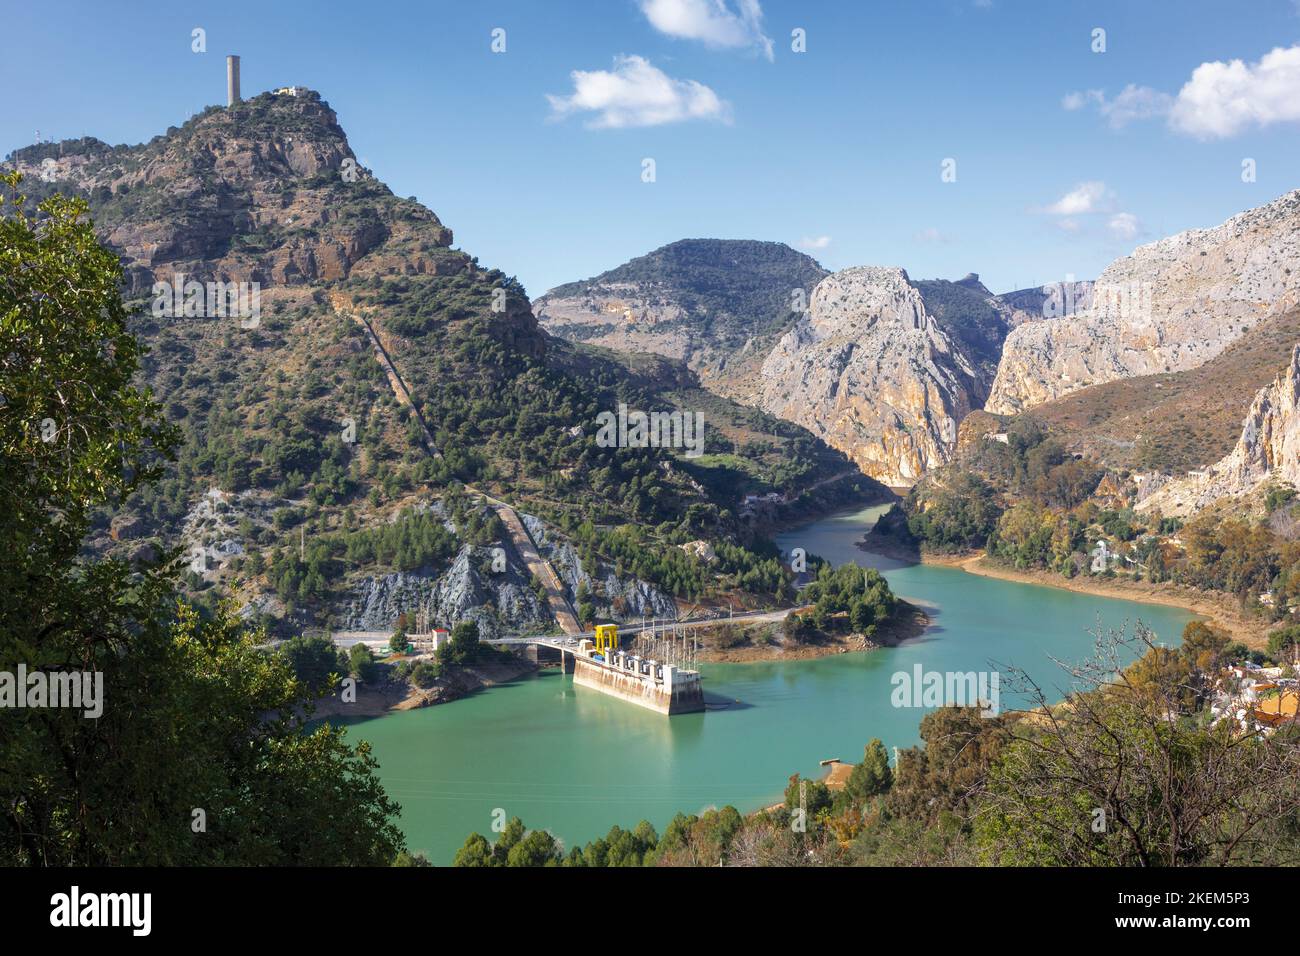 La centrale hydroélectrique de Tajo de la Encantada à El Chorro, province de Malaga, Andalousie, sud de l'Espagne. Tajo de la Encantada est connu comme un pur pompé Banque D'Images